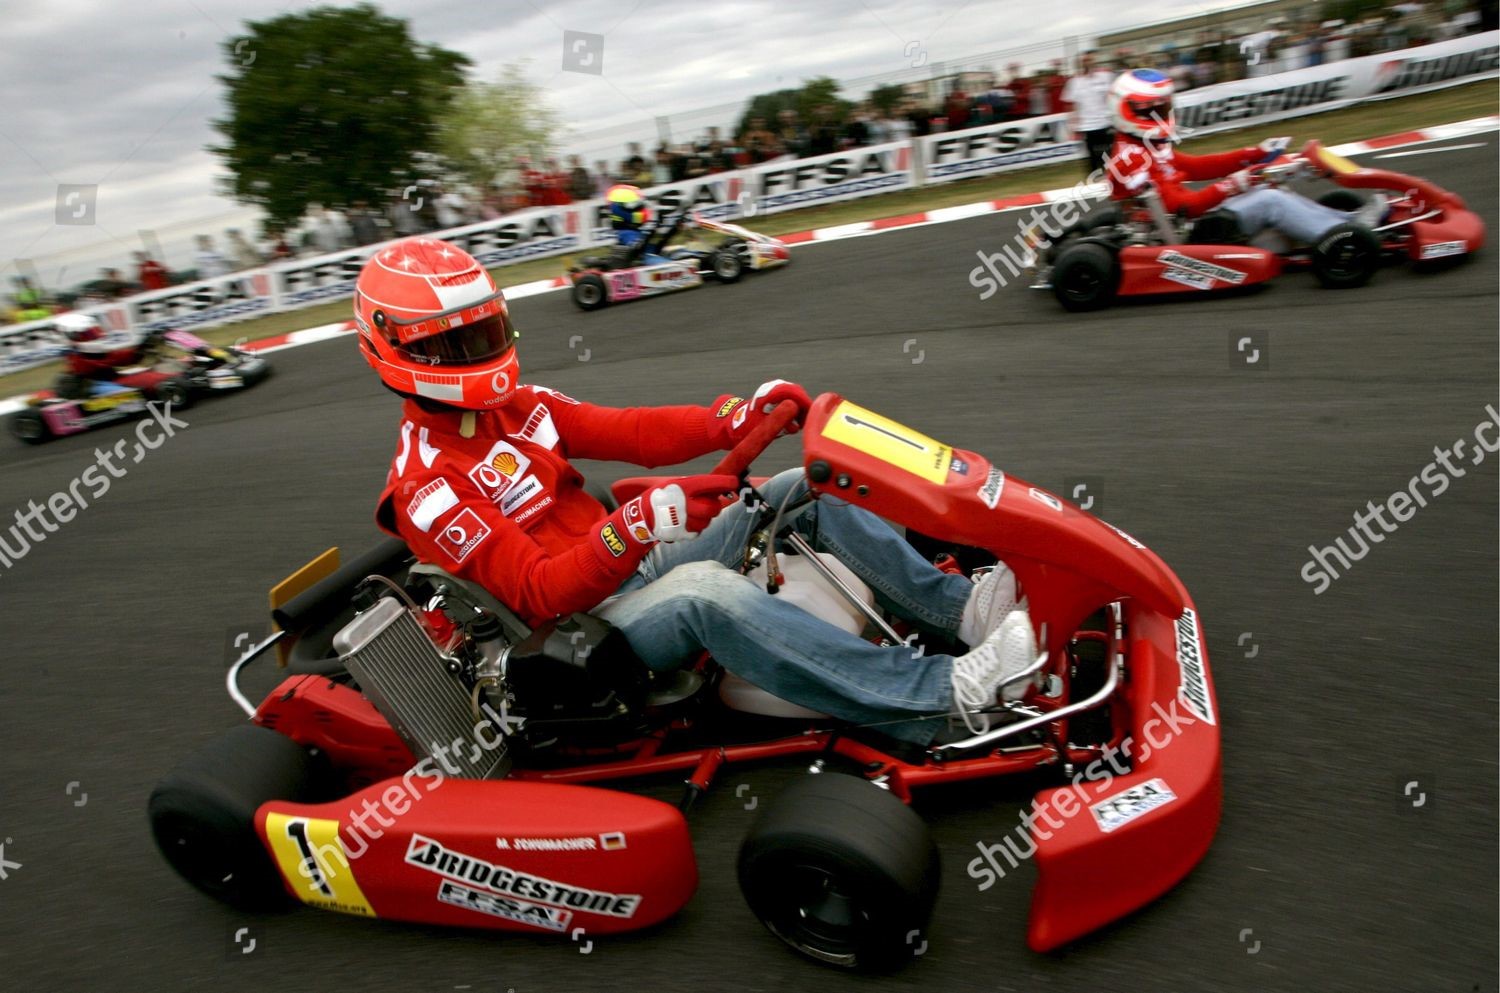 Michael Schumacher going karting.